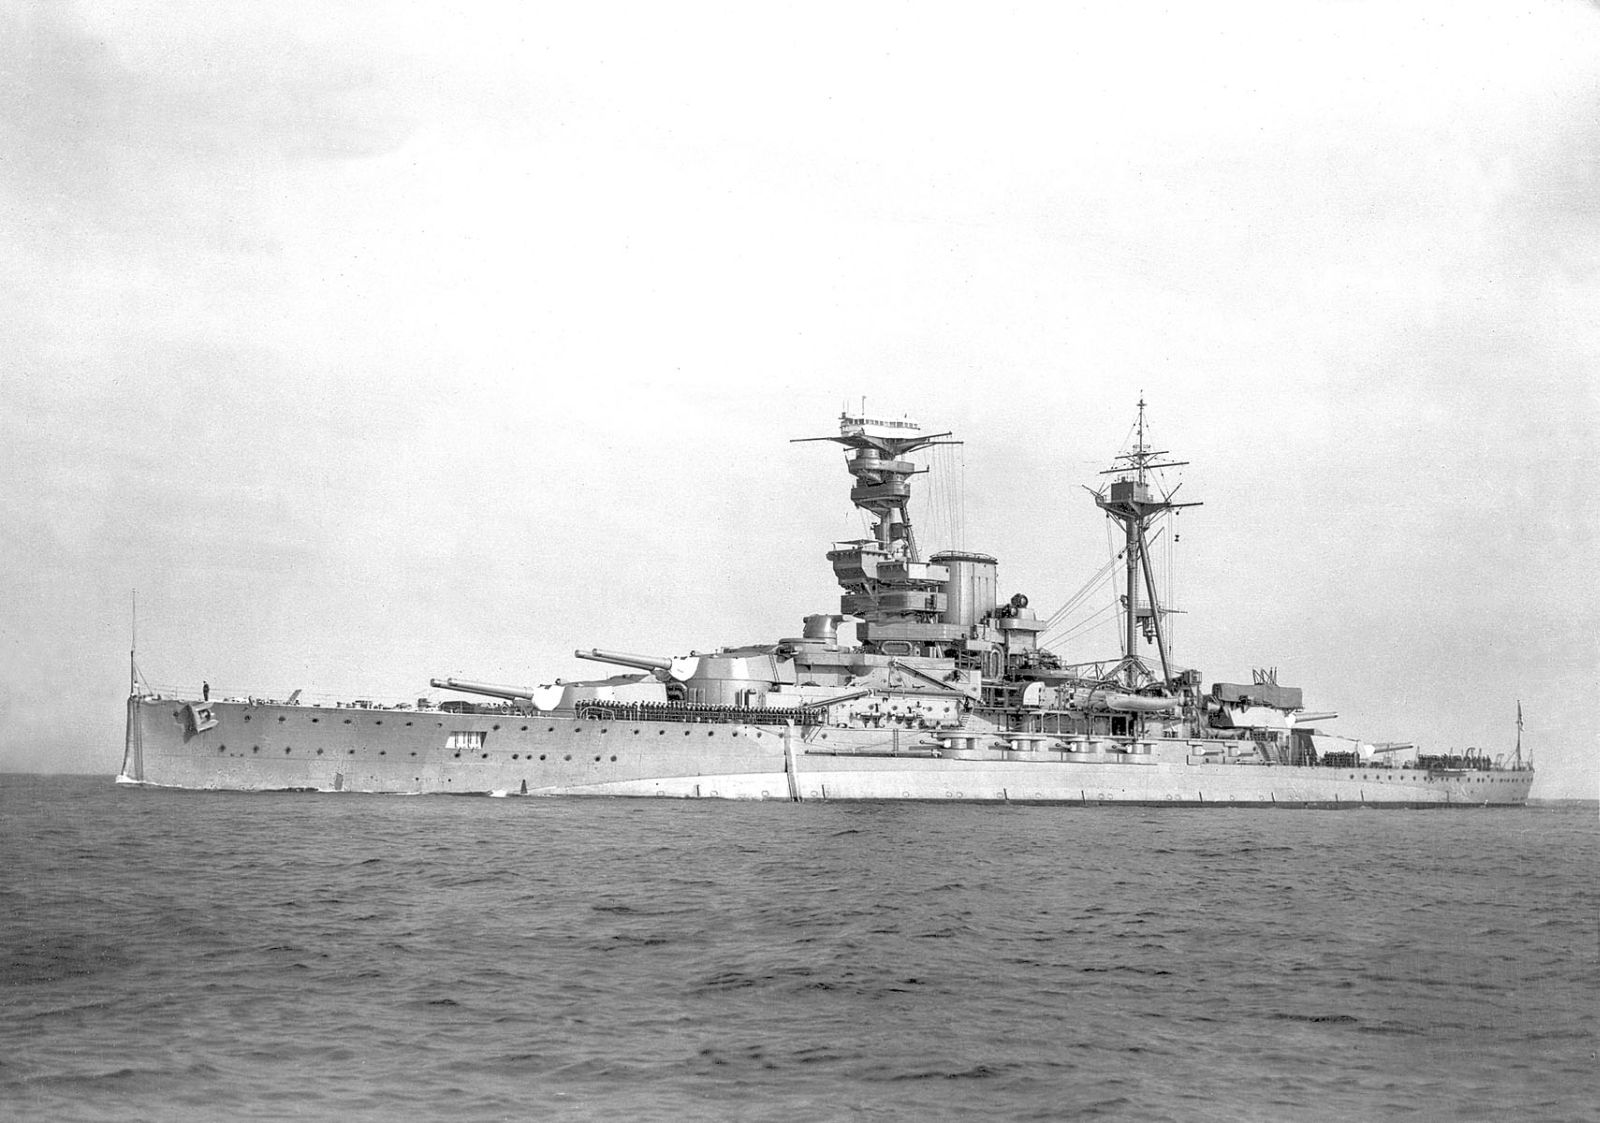 HMS Royal Oak, the Revenge-class battleships, 1936